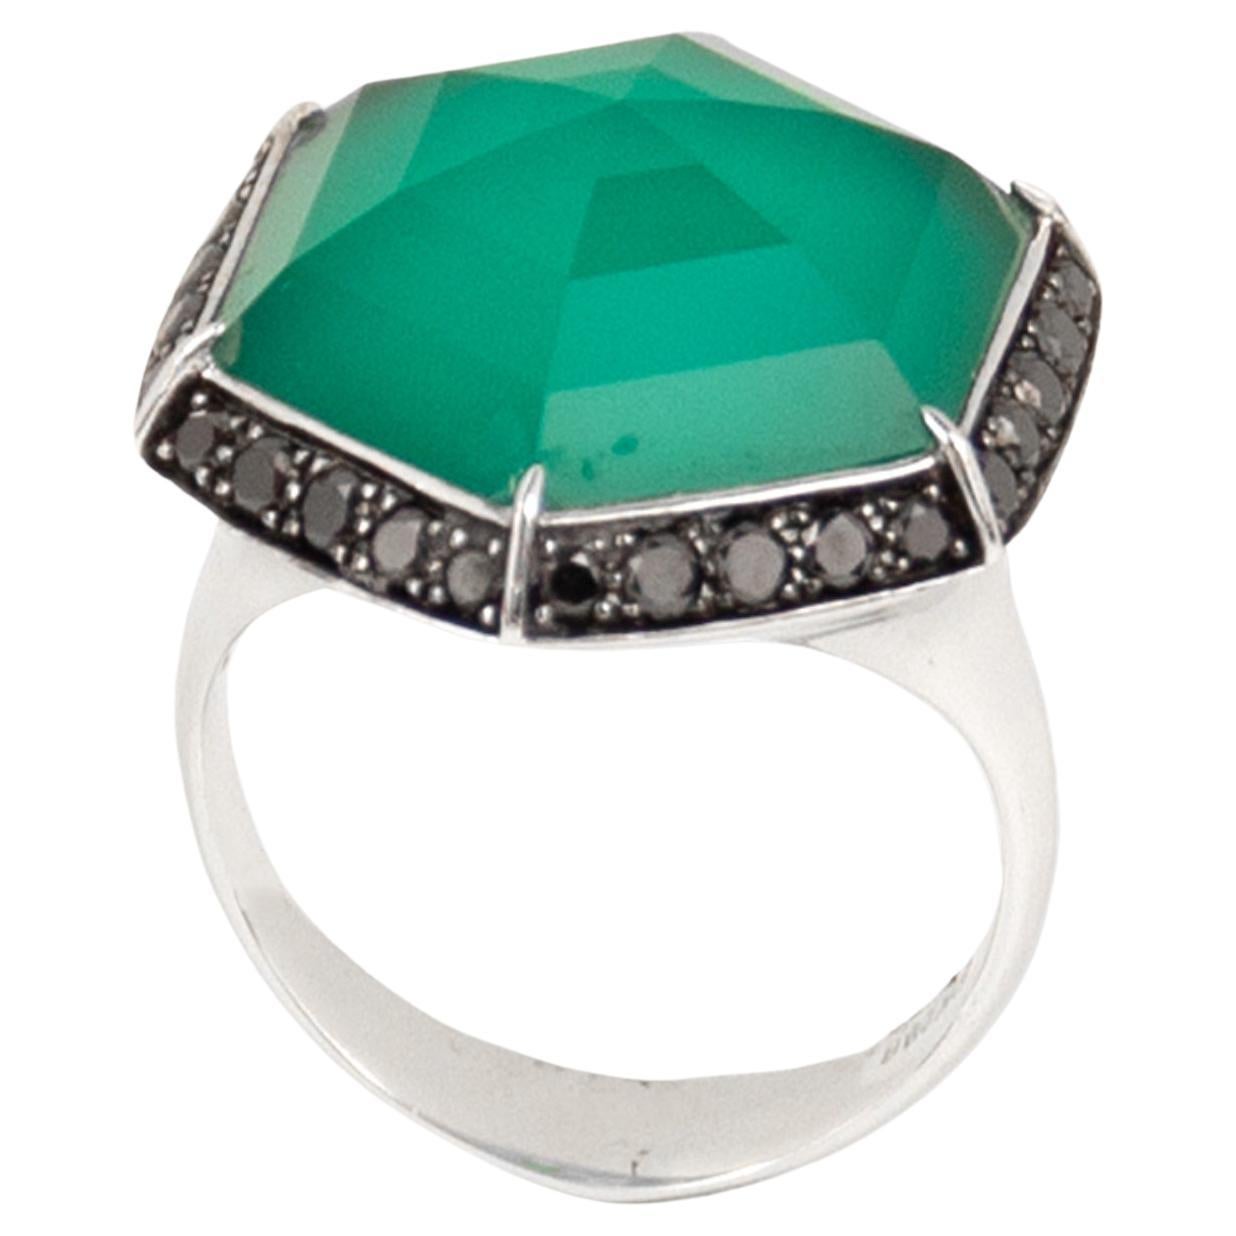 Stephen Webster 18k White Gold Black Diamonds & Green Quartz Ring